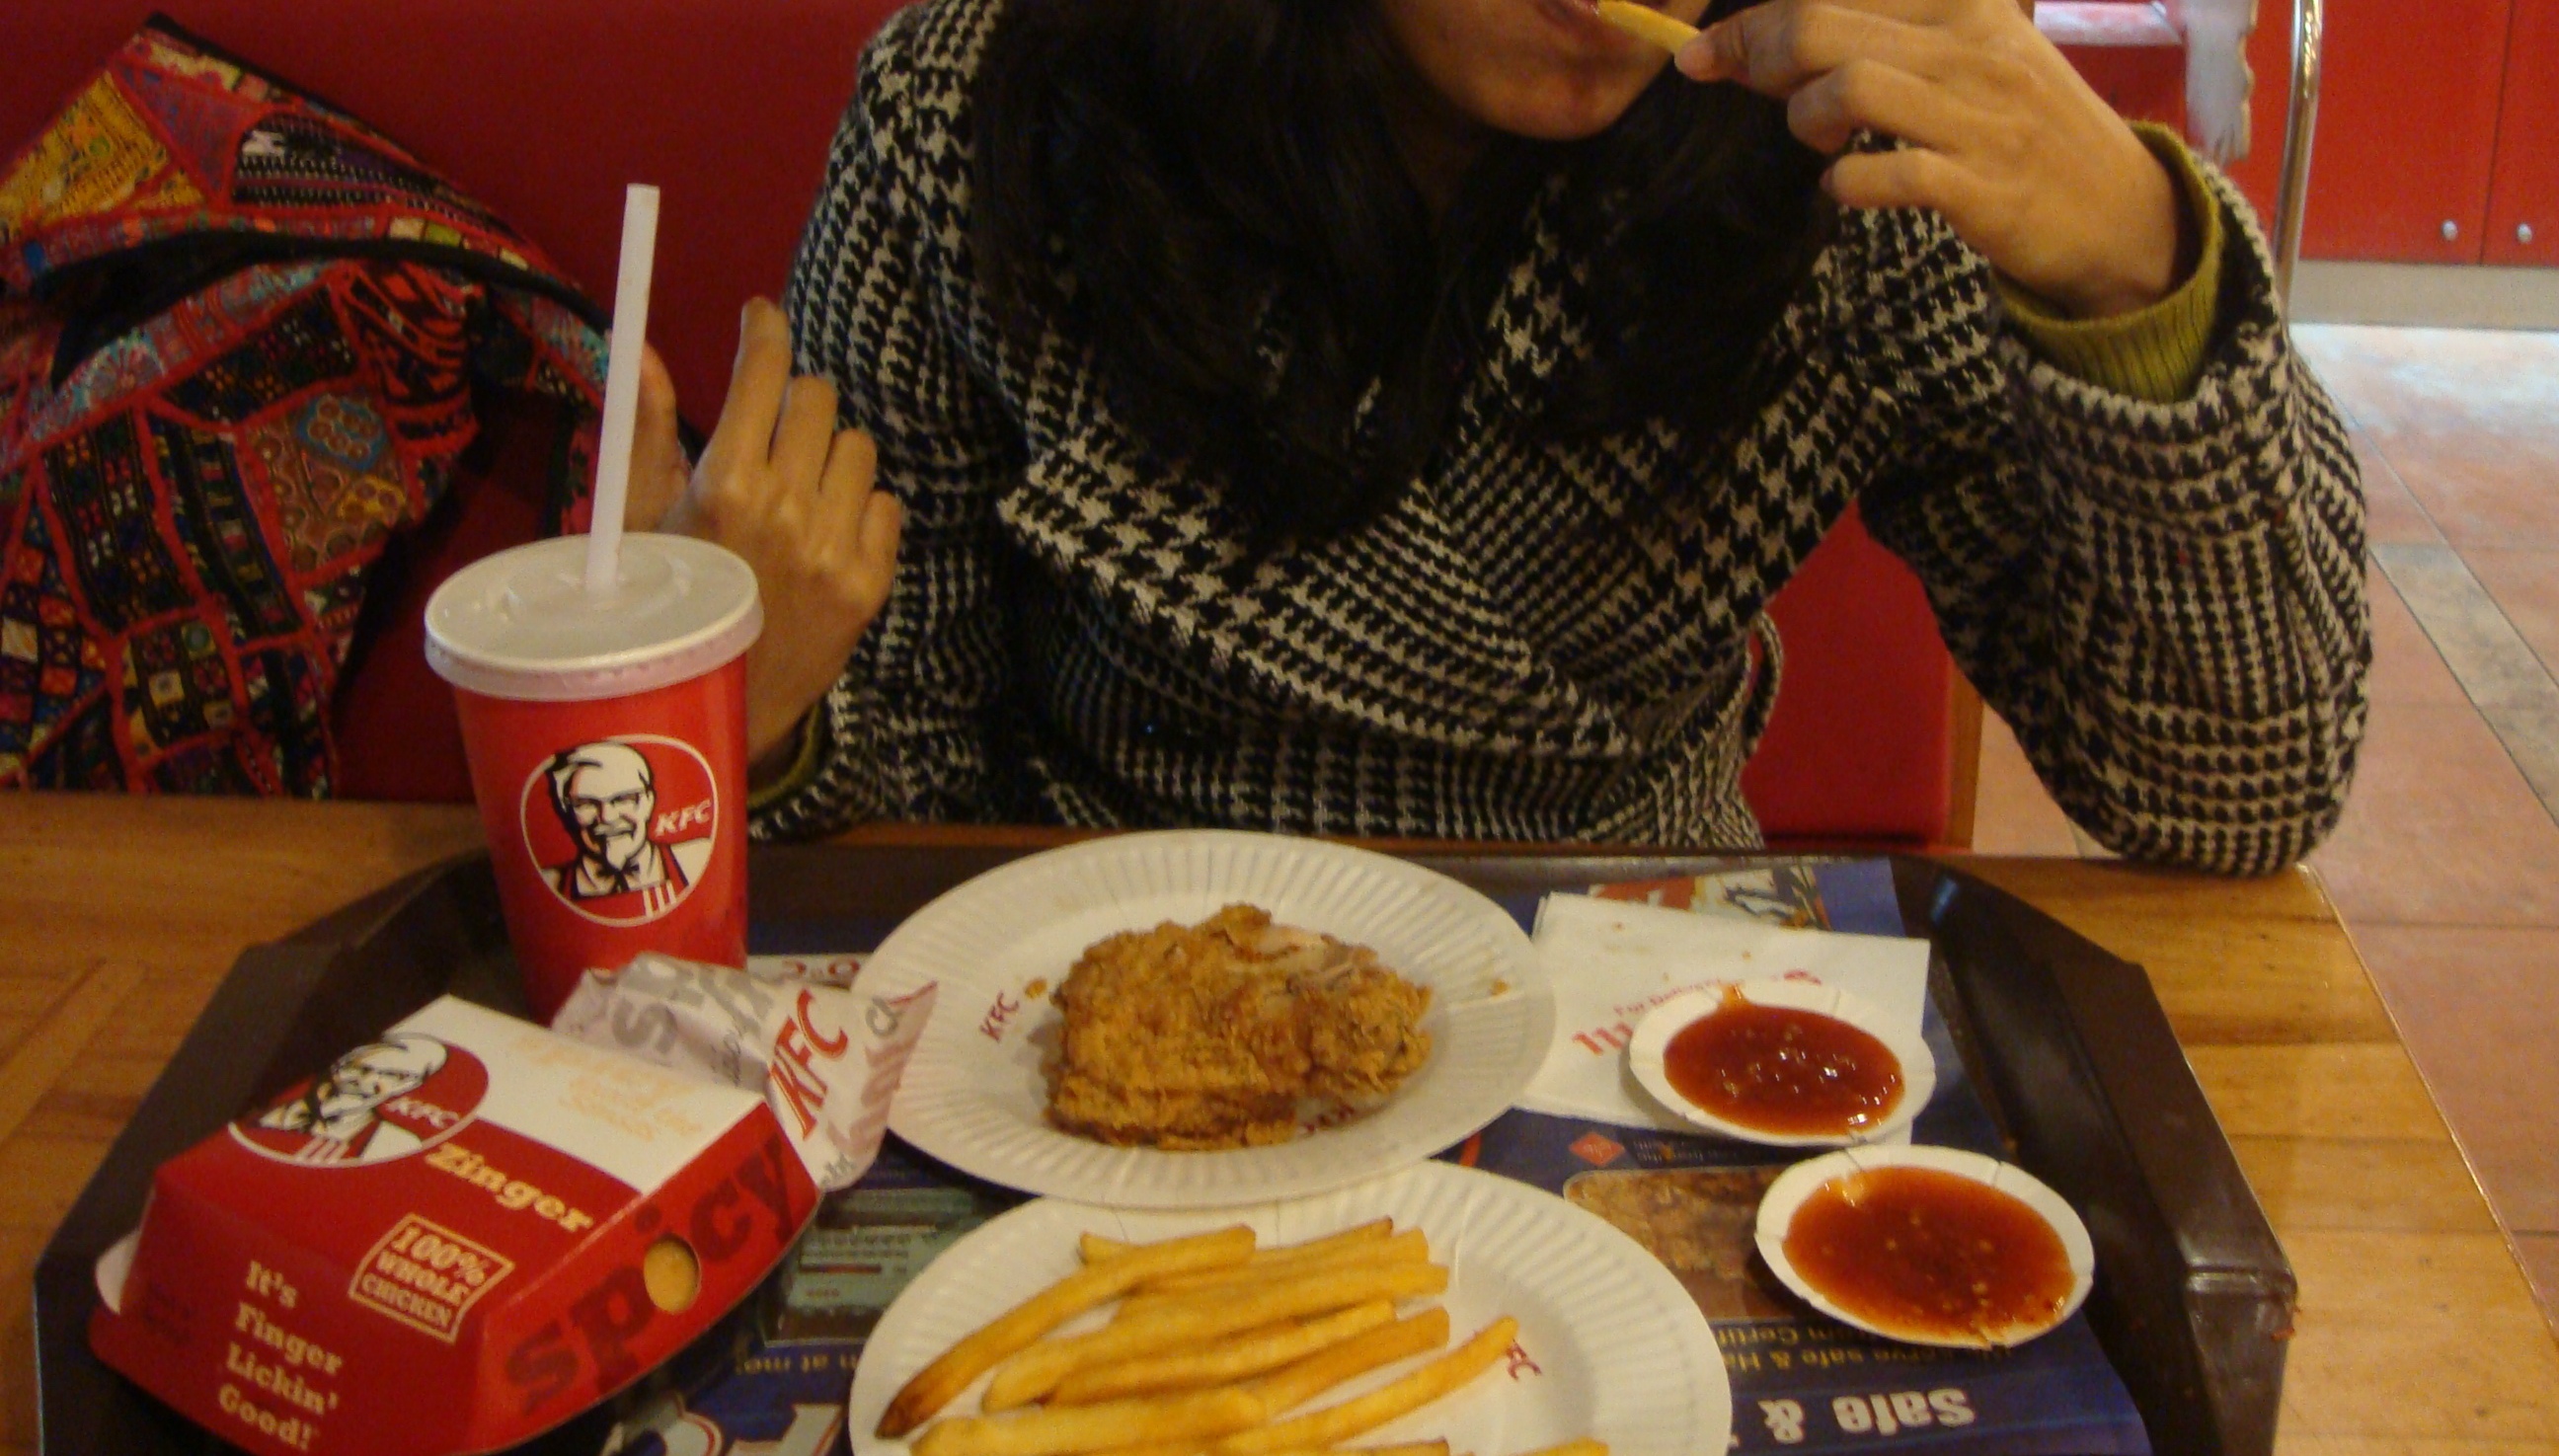 Kfc chicken and fries photo